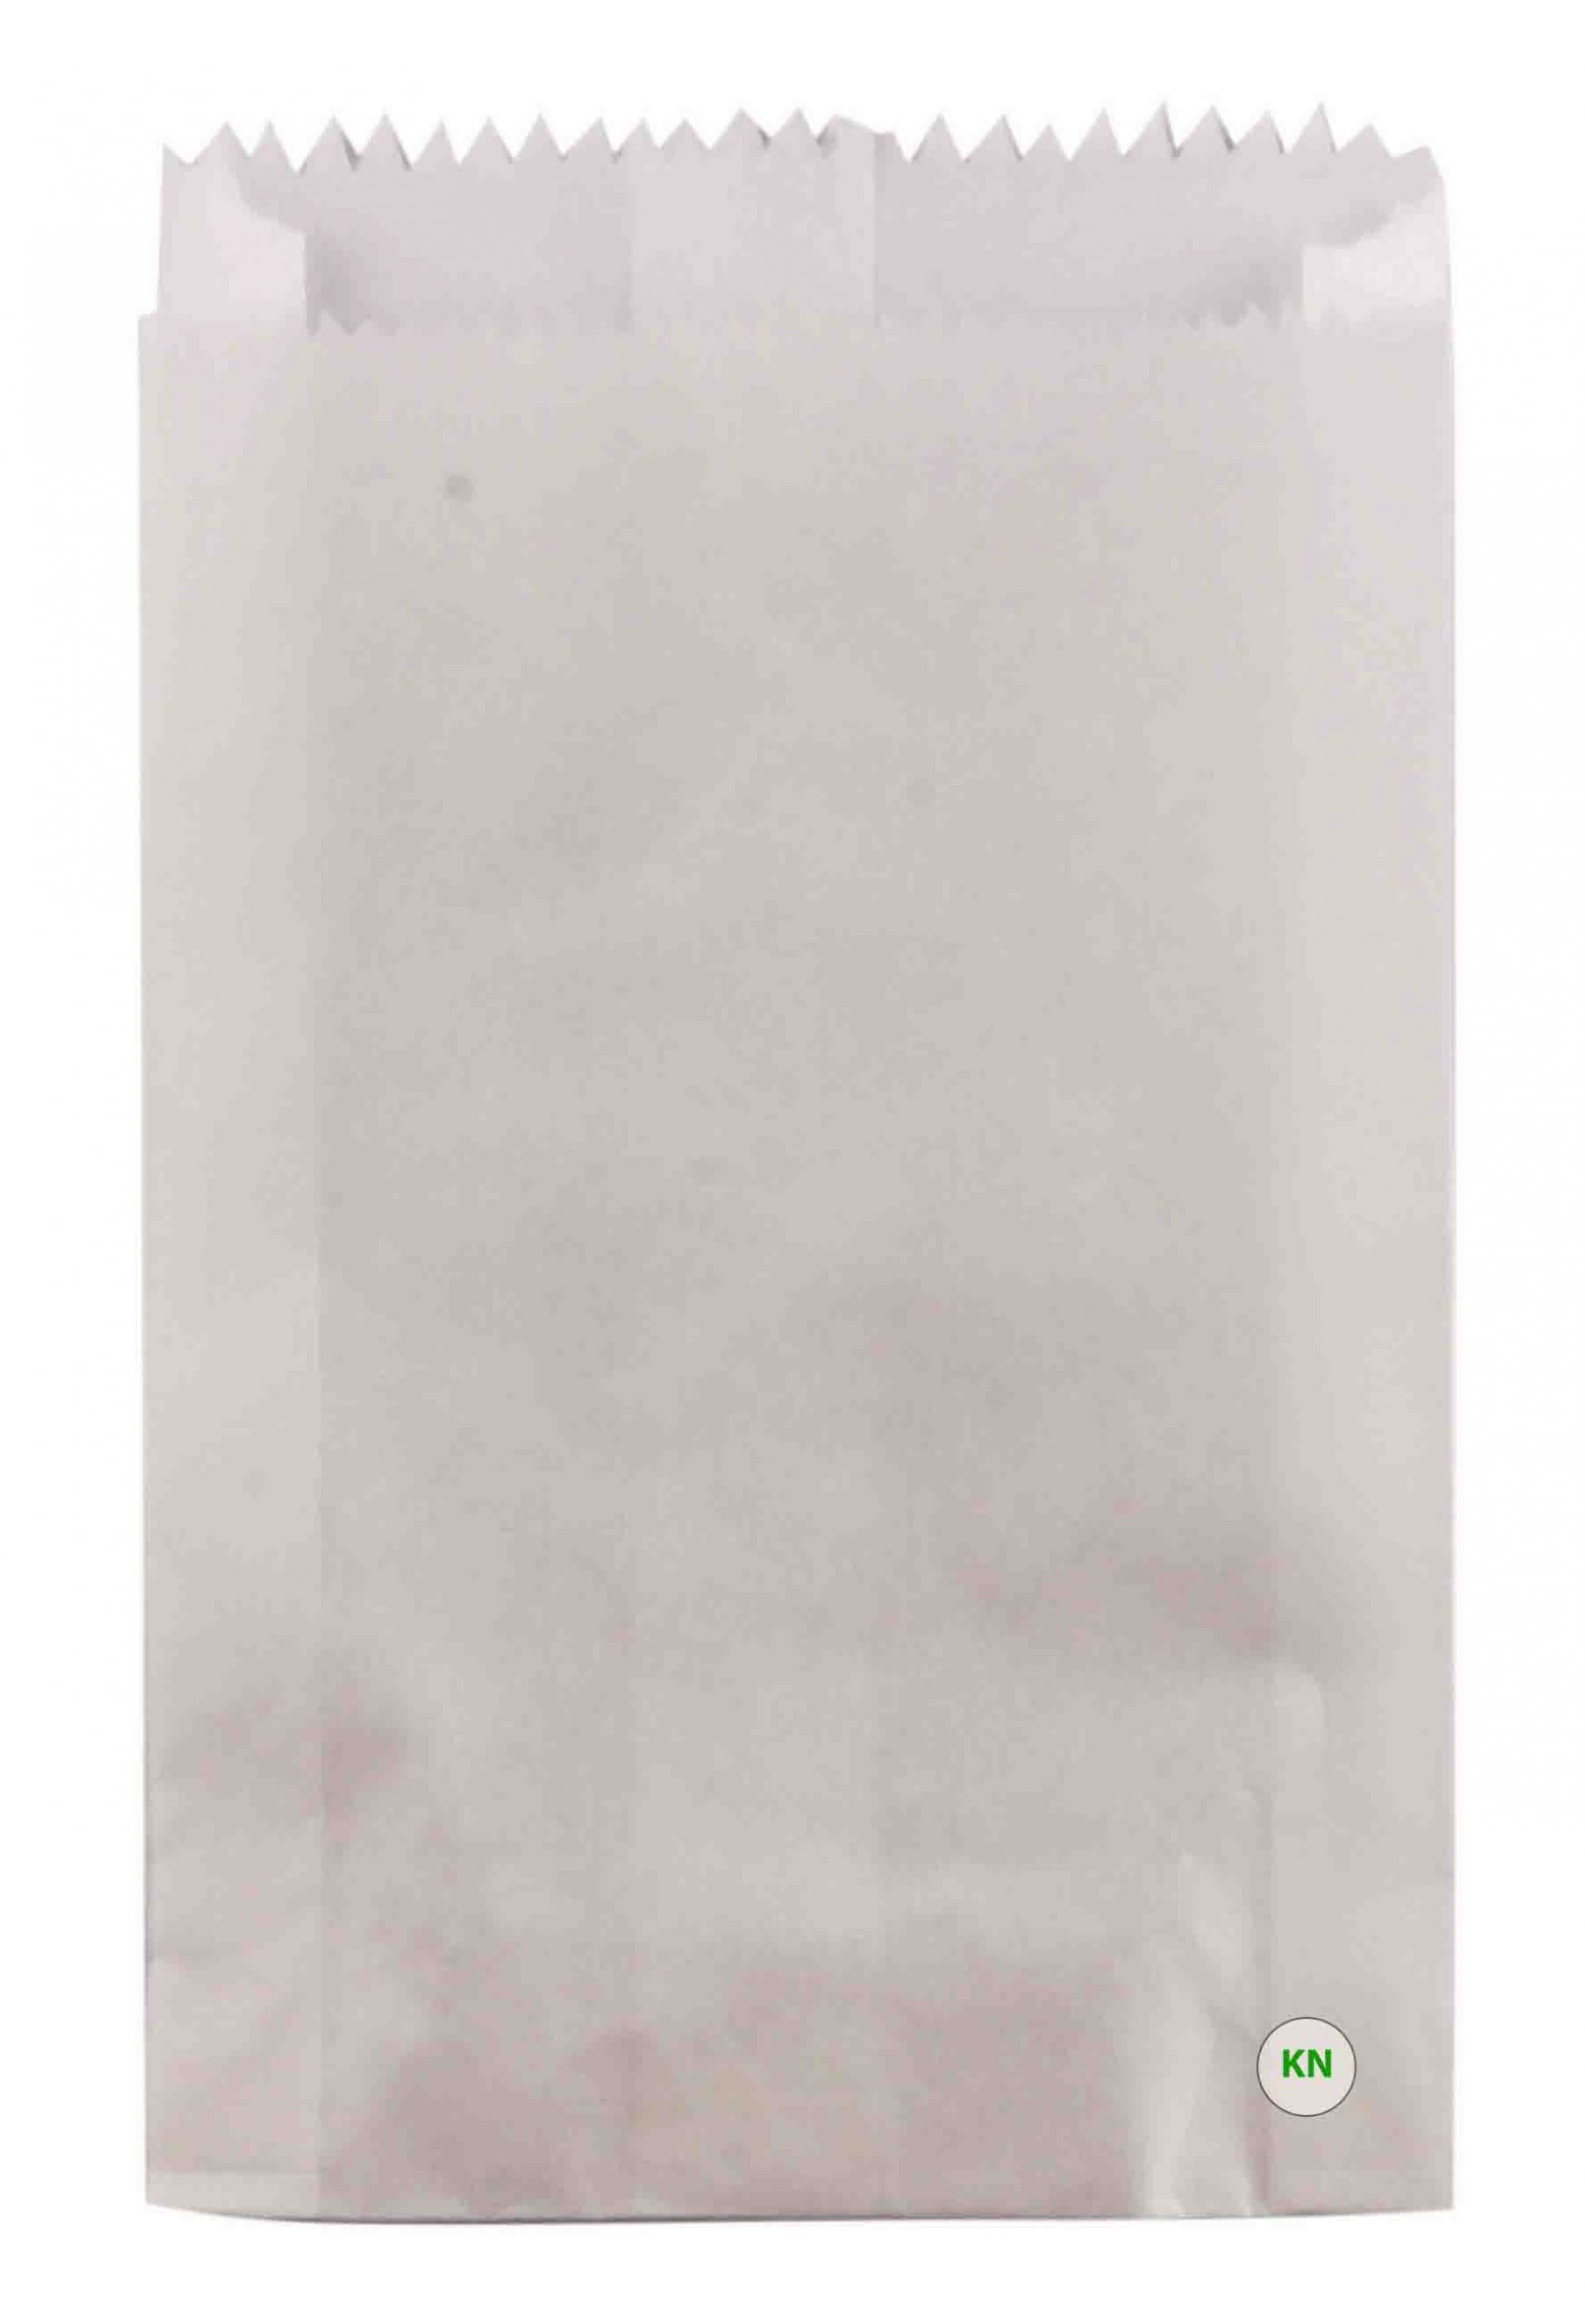 Пакет бумажный белый для картошки фри, 170 х 100 х 30 мм